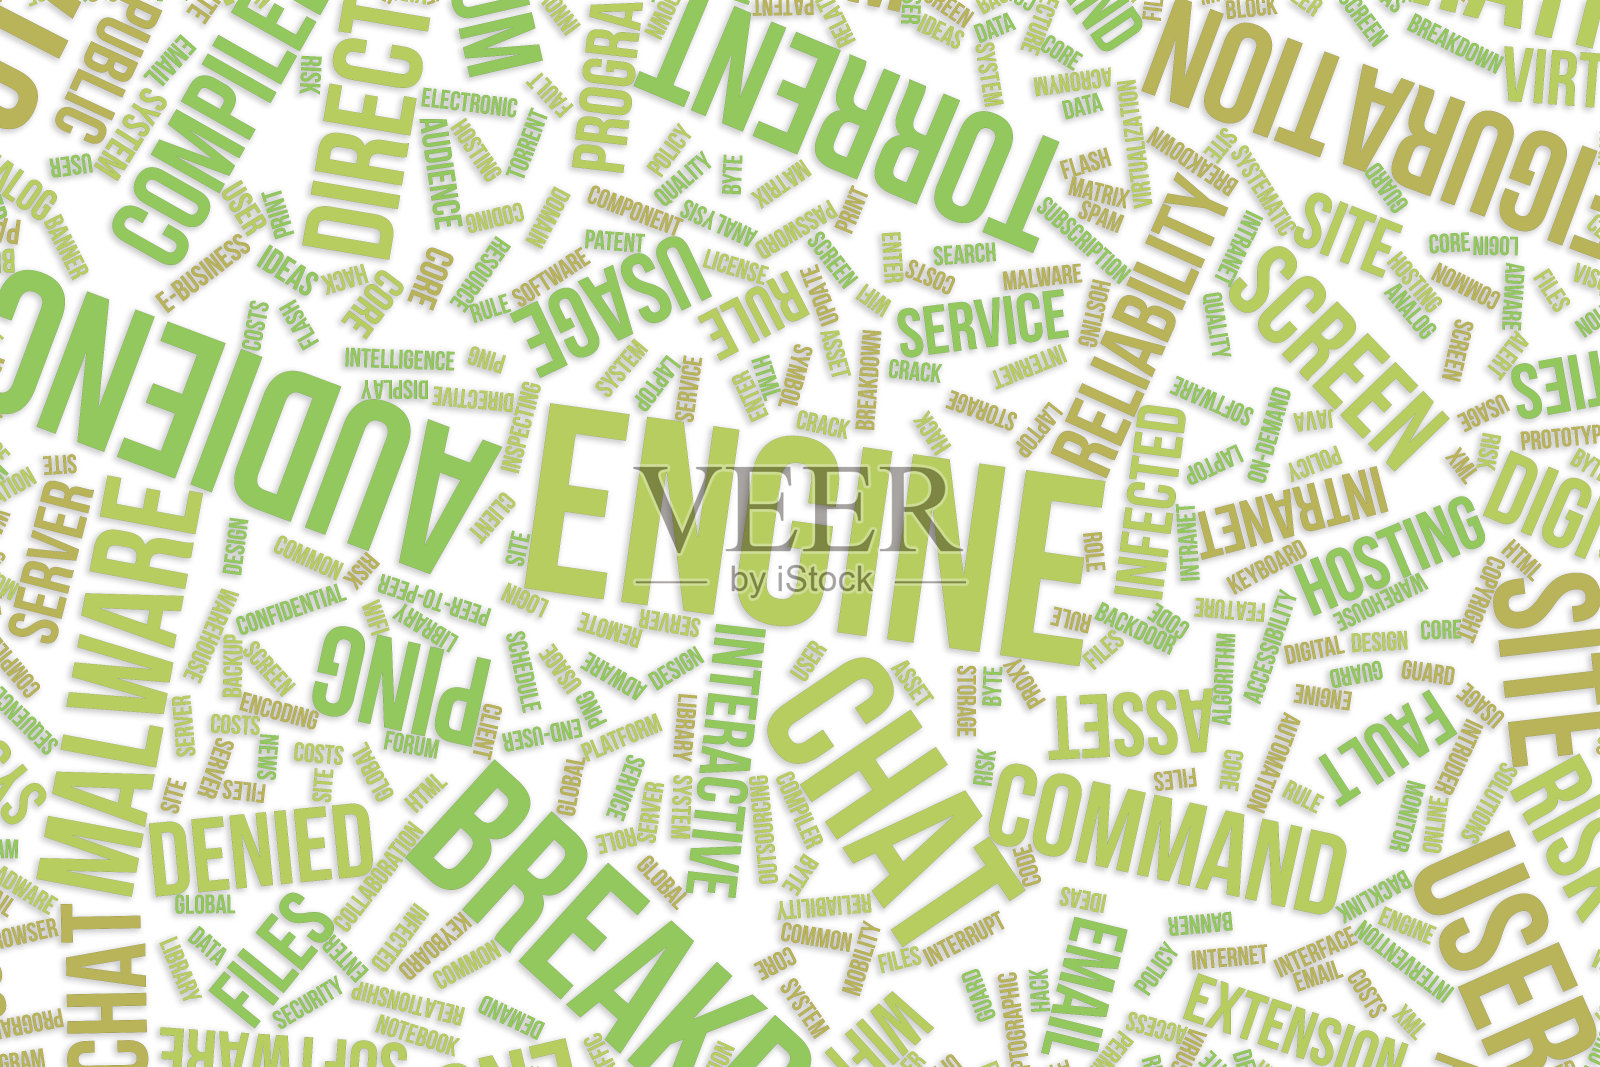 引擎，用于商业、信息技术或IT的概念词云。插画图片素材